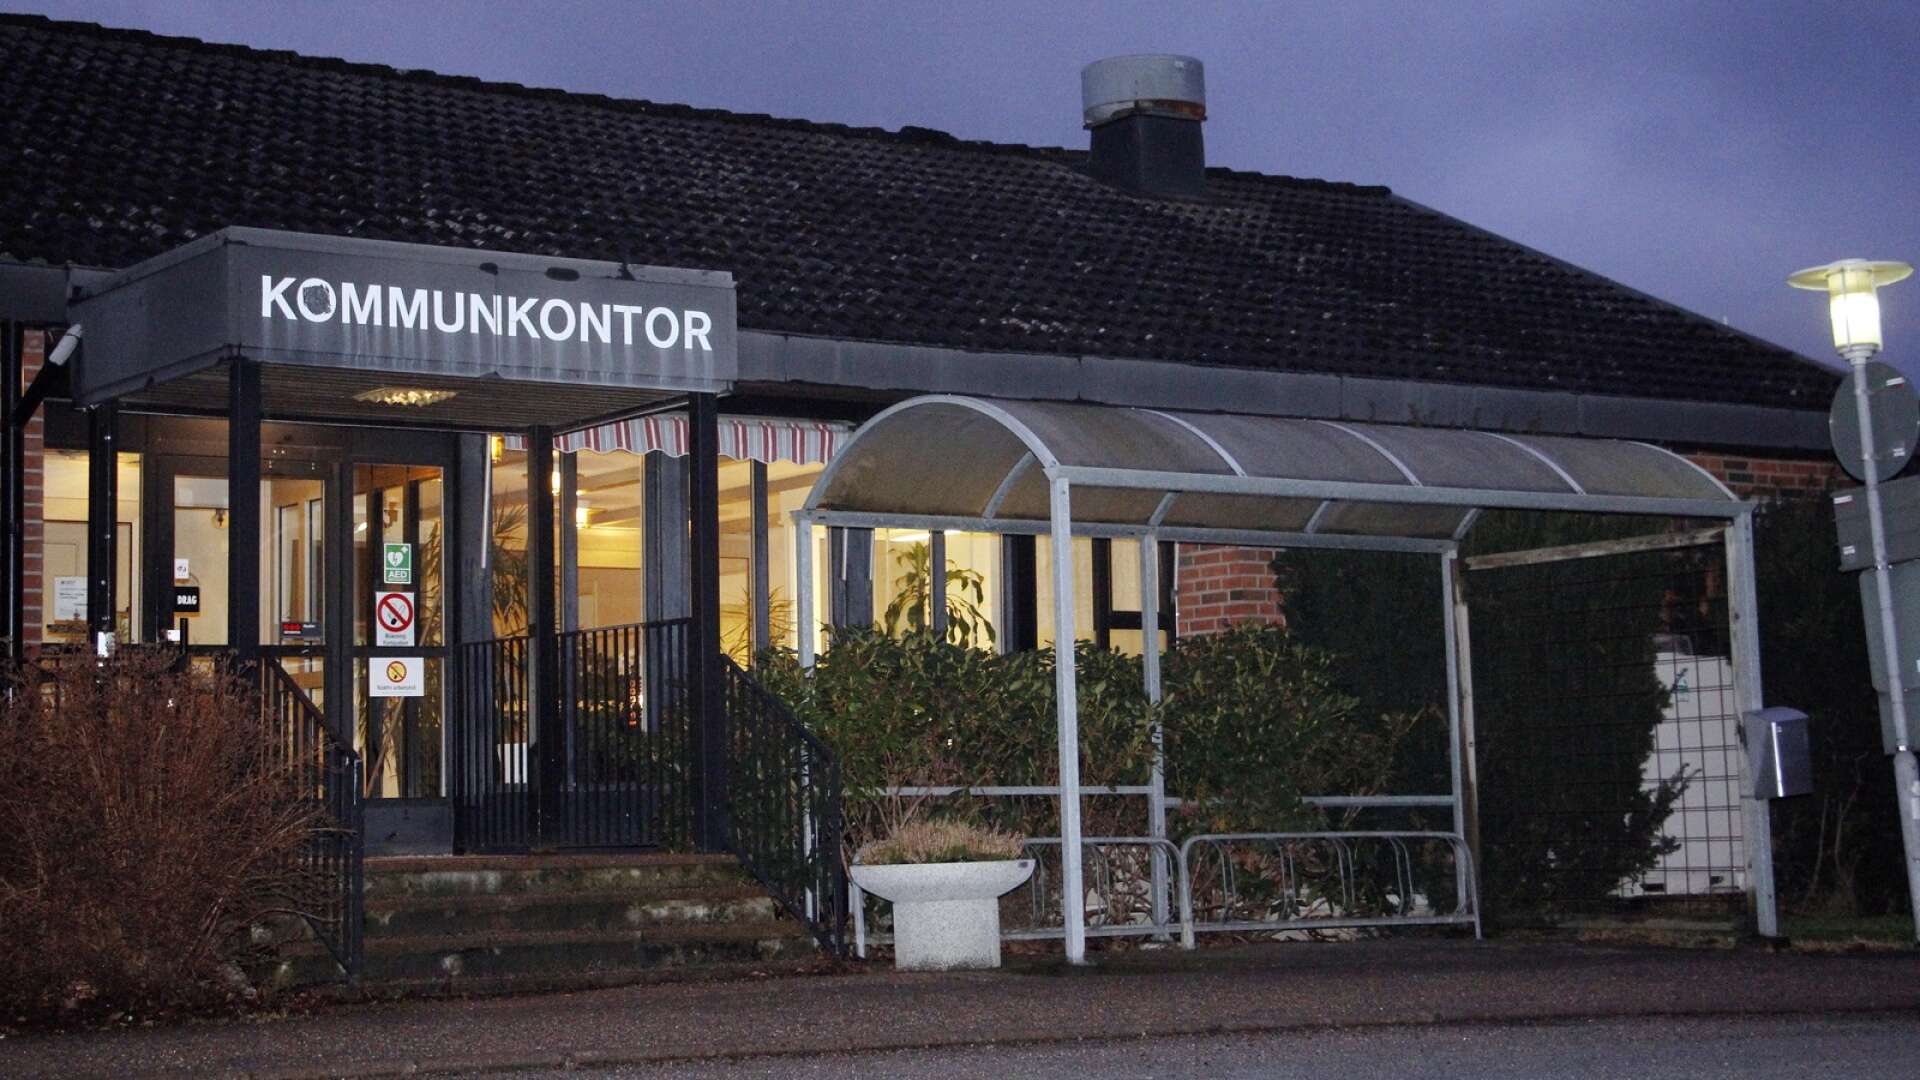 Den tidigare näringslivsstrategen i Färgelanda kommun får sex månadslöner efter en uppmärksammad arbetssituation i januari i år.